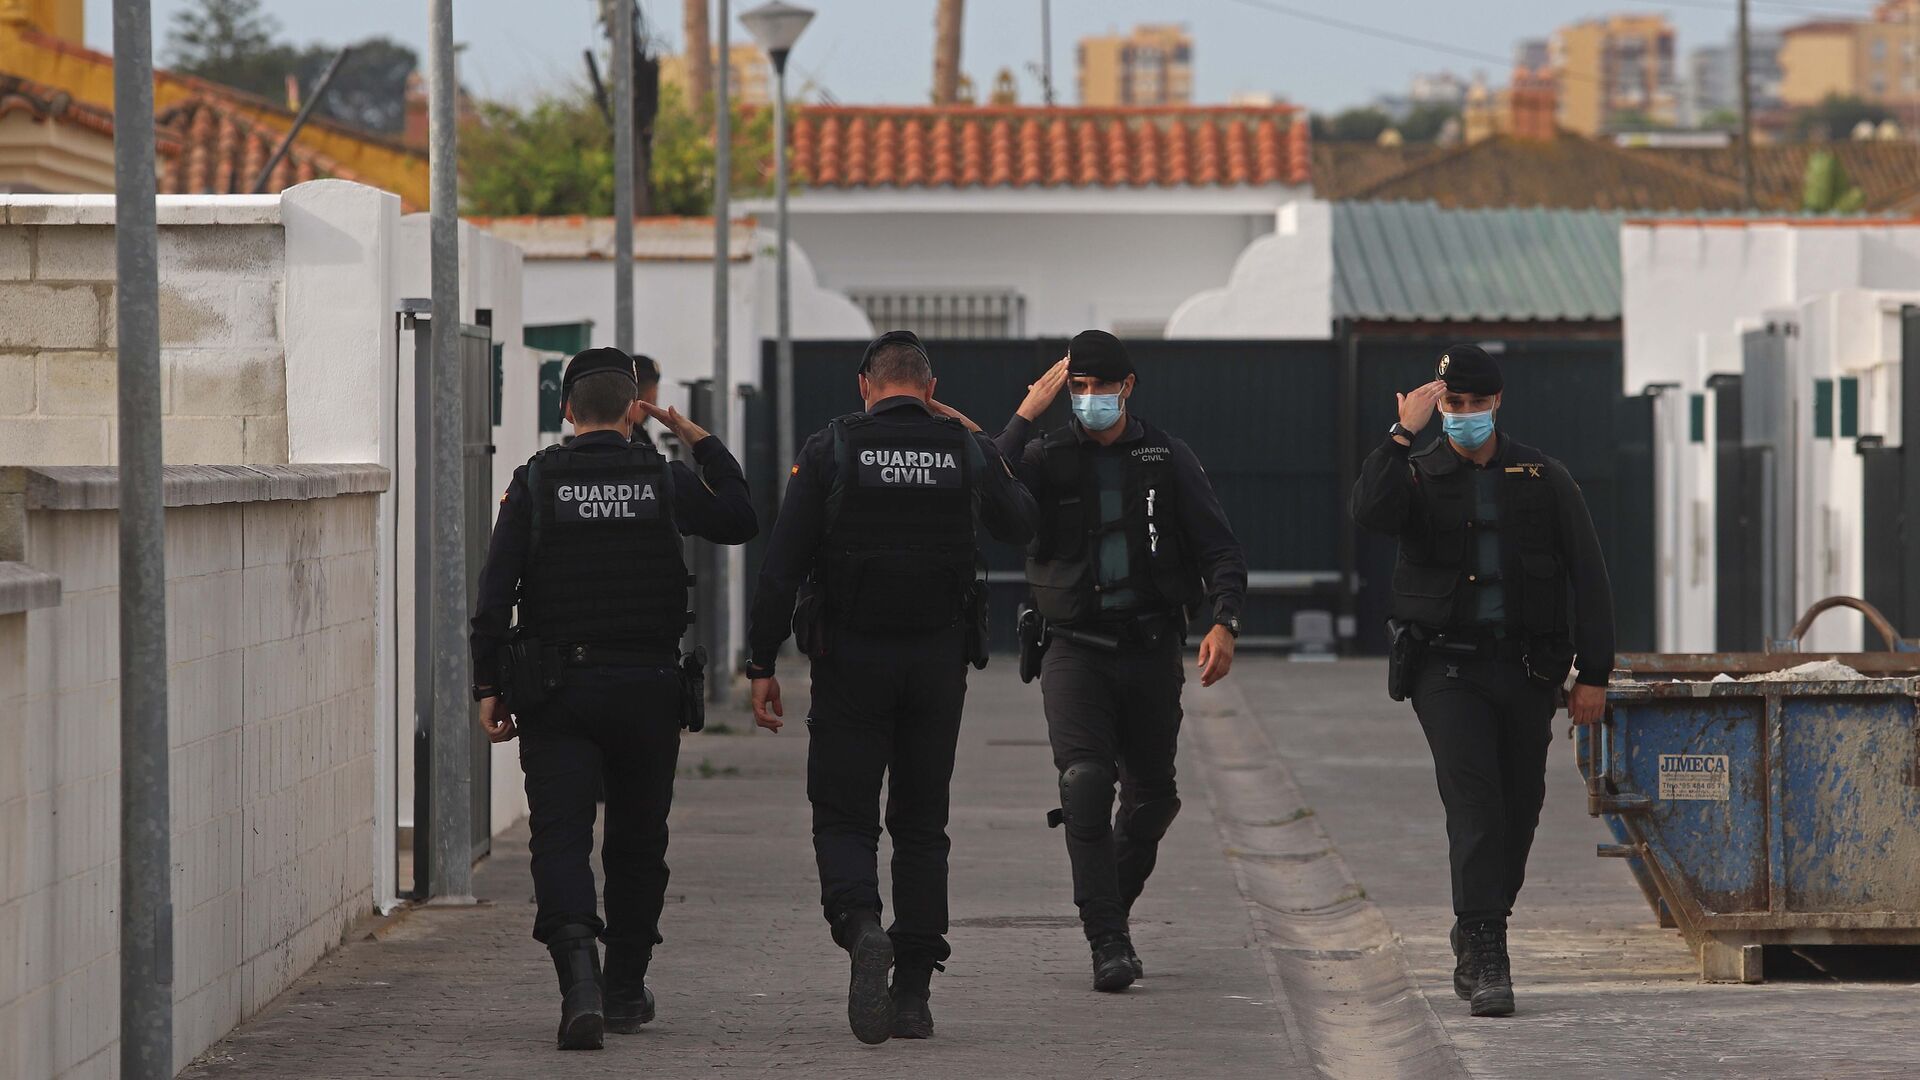 Fotos de los registros de la Guardia Civil en Algeciras